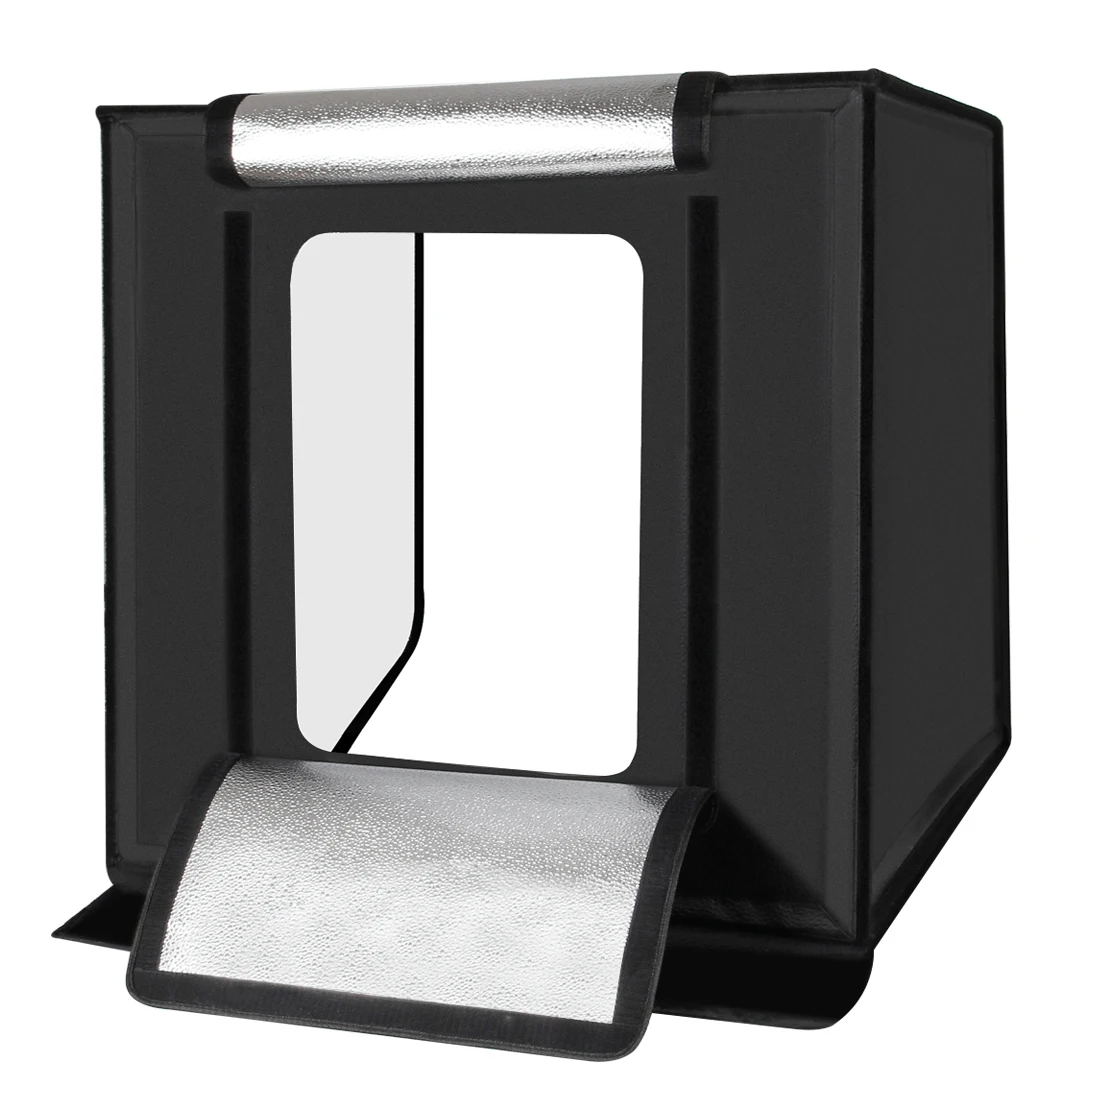 16X1" затемненный мини светодиодный светильник комнатное фото освещение для фотосъемки в студии шатер-фон куб коробка celular фон фотостудия наборы